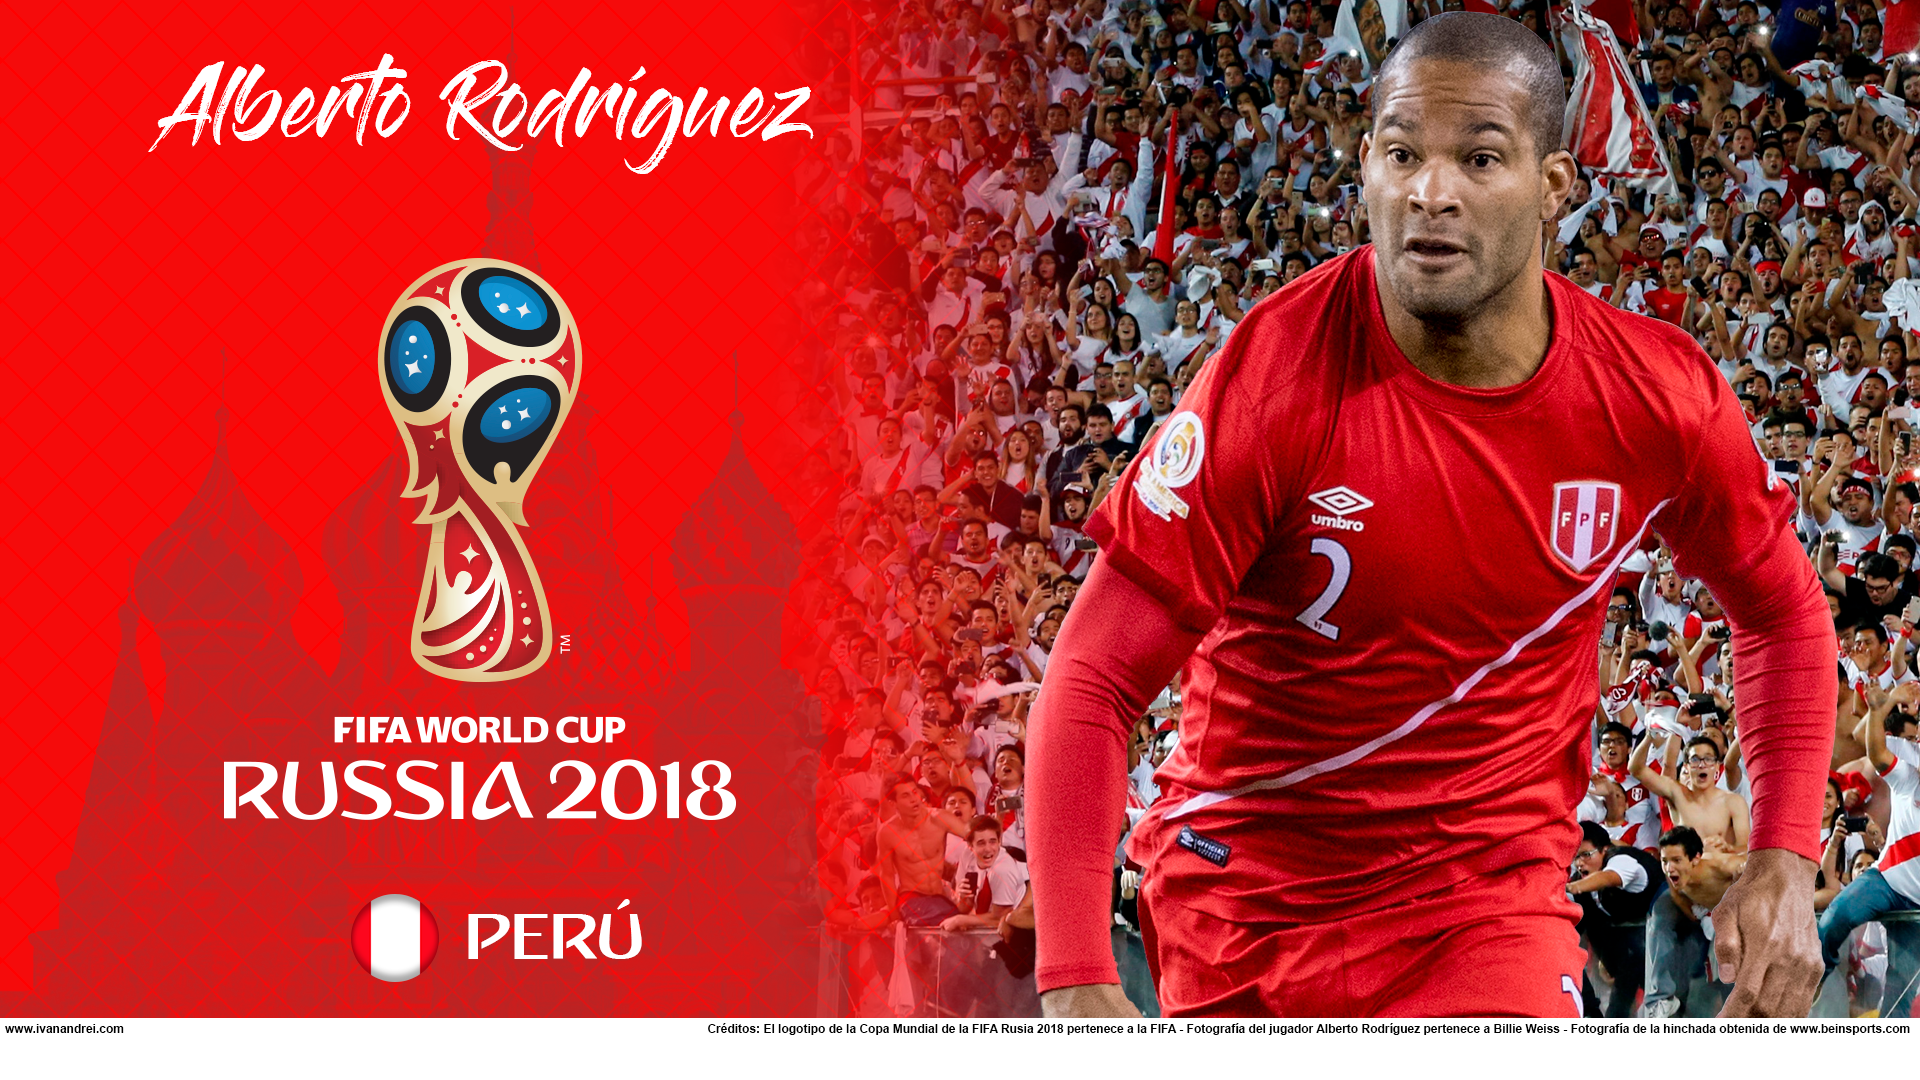 Wallpaper de Alberto Rodríguez de Perú para la Copa Mundial de la FIFA - Rusia 2018 - Edición para PC (1920x1080)